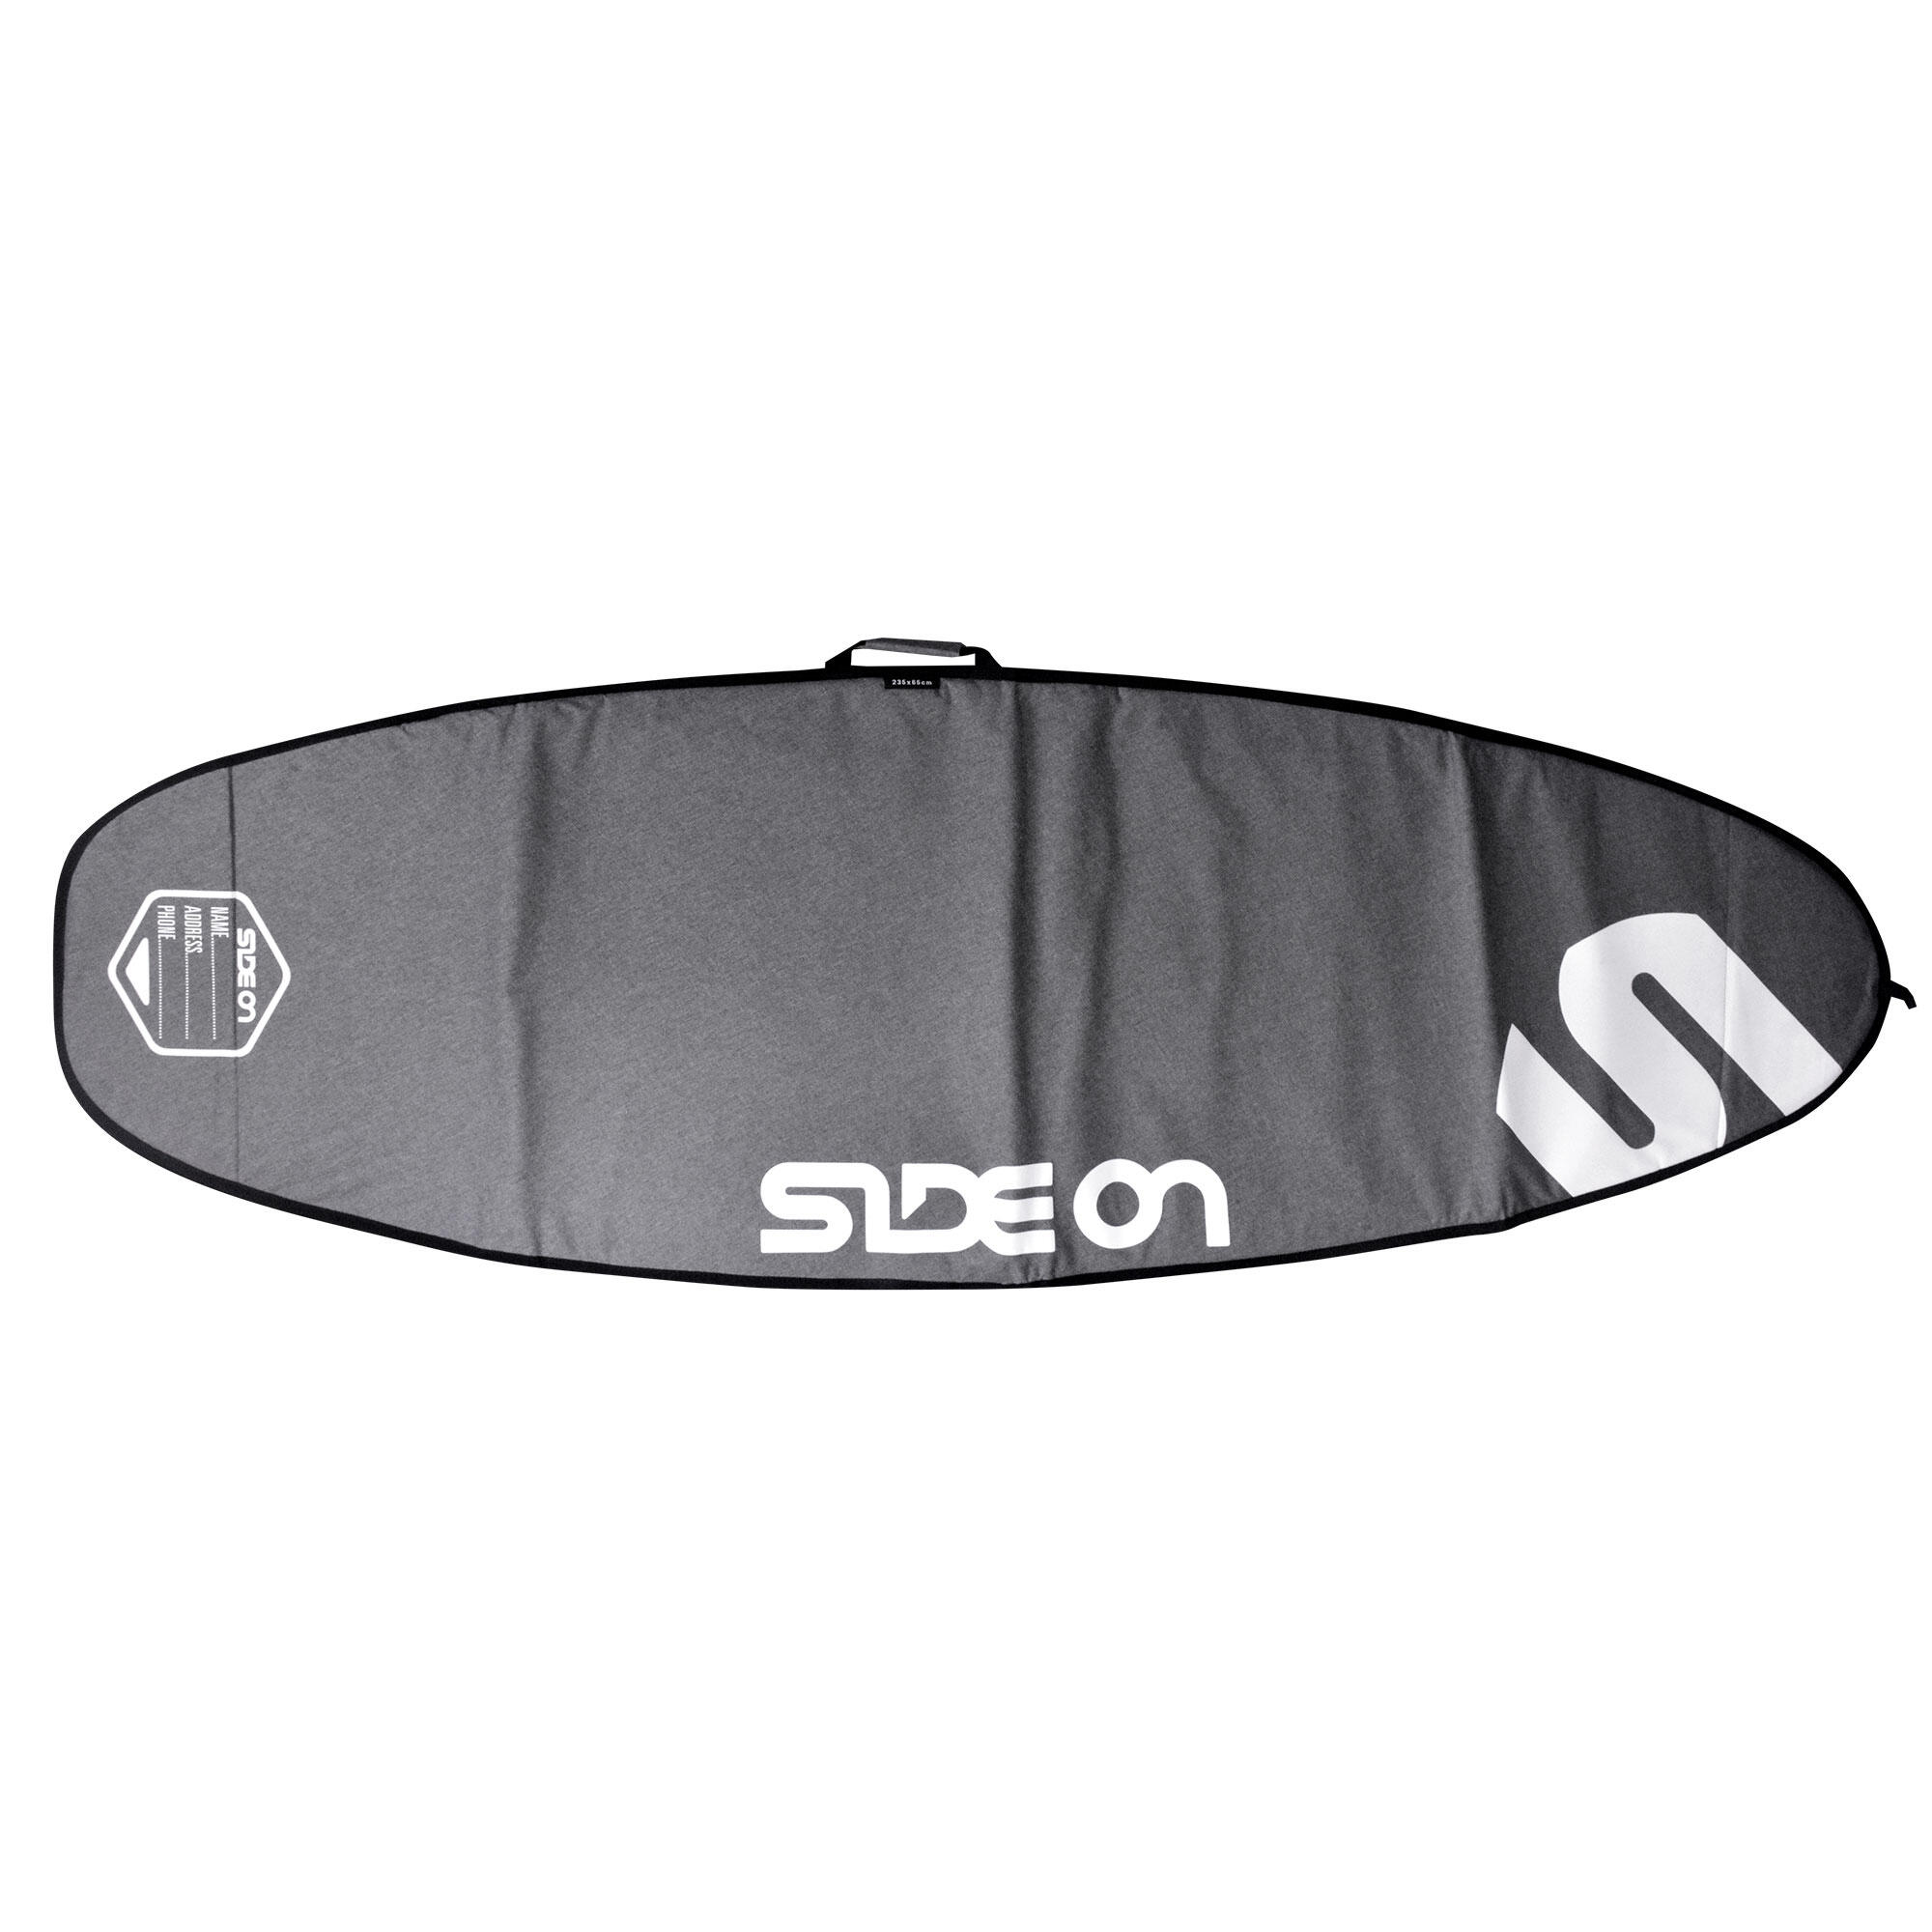 SIDE ON Boardbag Windsurfboard 235/95 cm Side One grau/weiss EINHEITSGRÖSSE